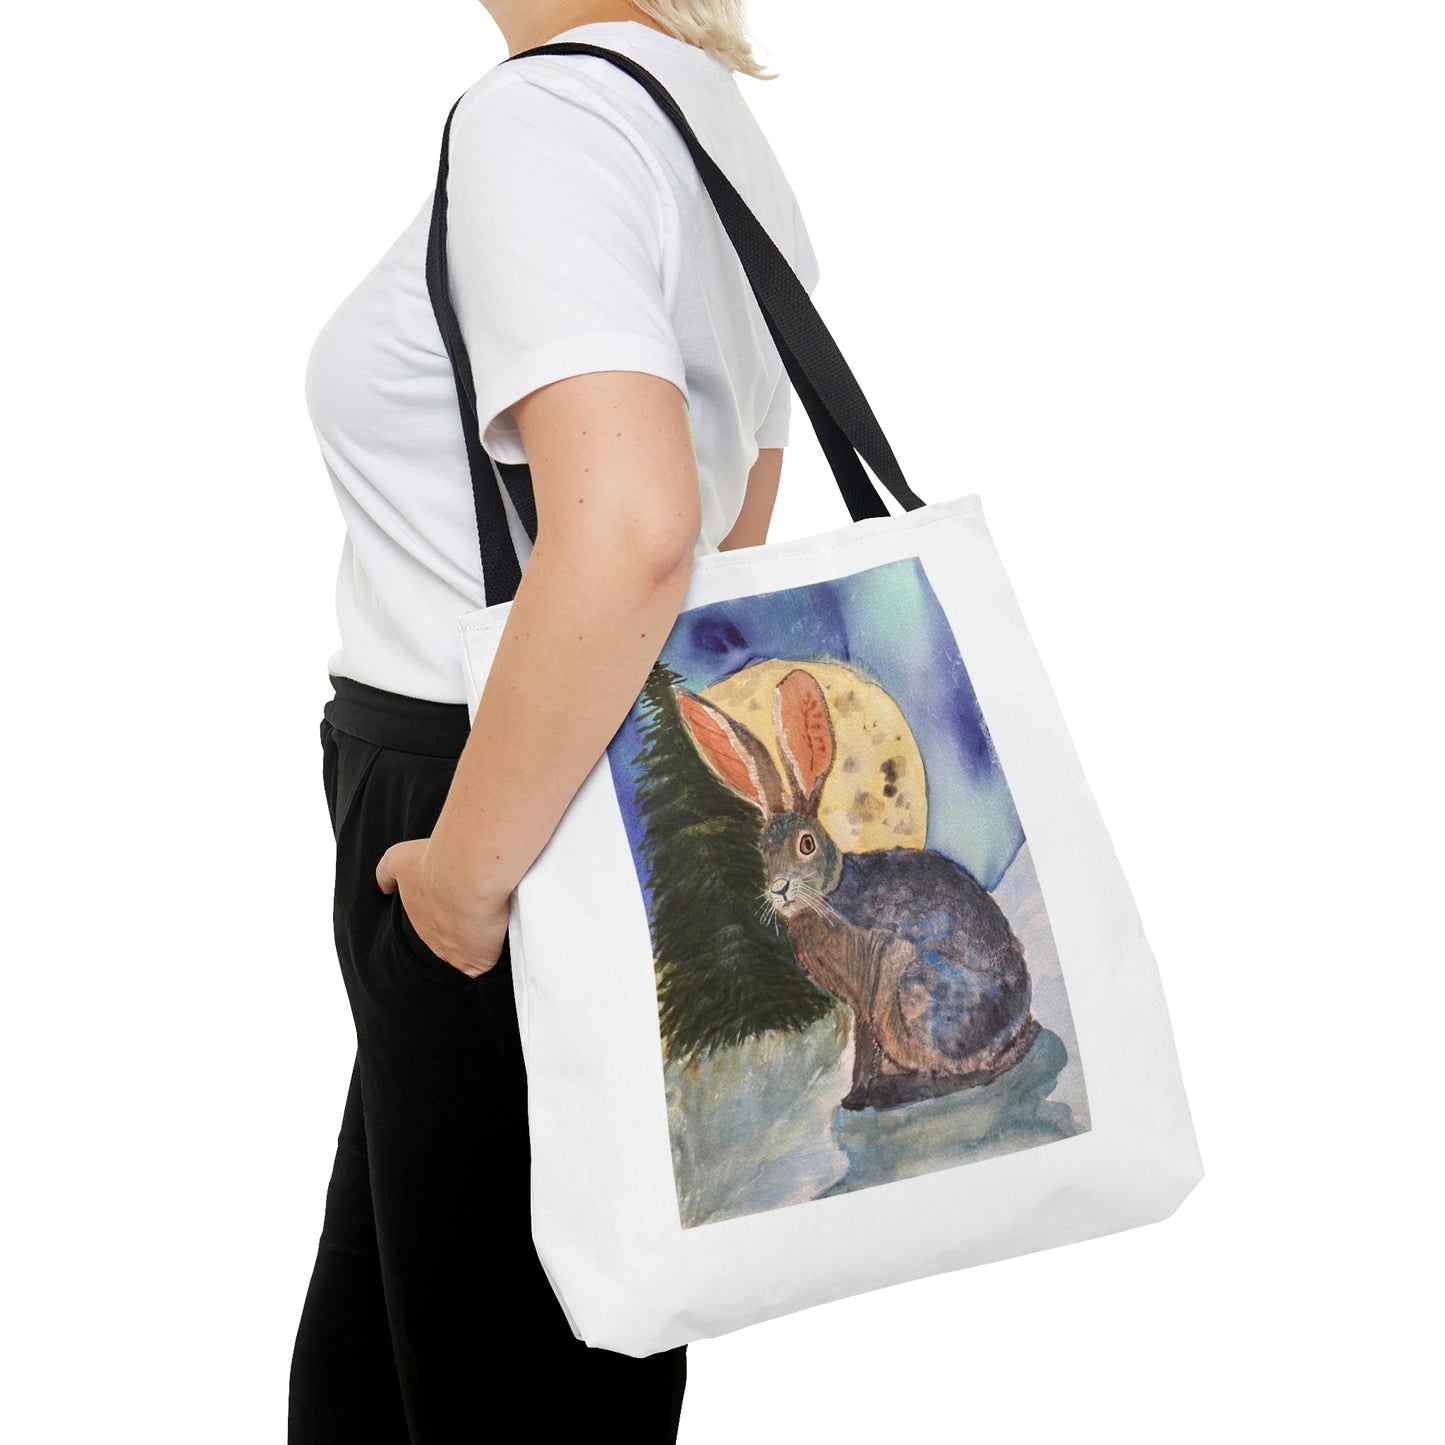 Rabbit Tote Bag,  Watercolor Bunny Print